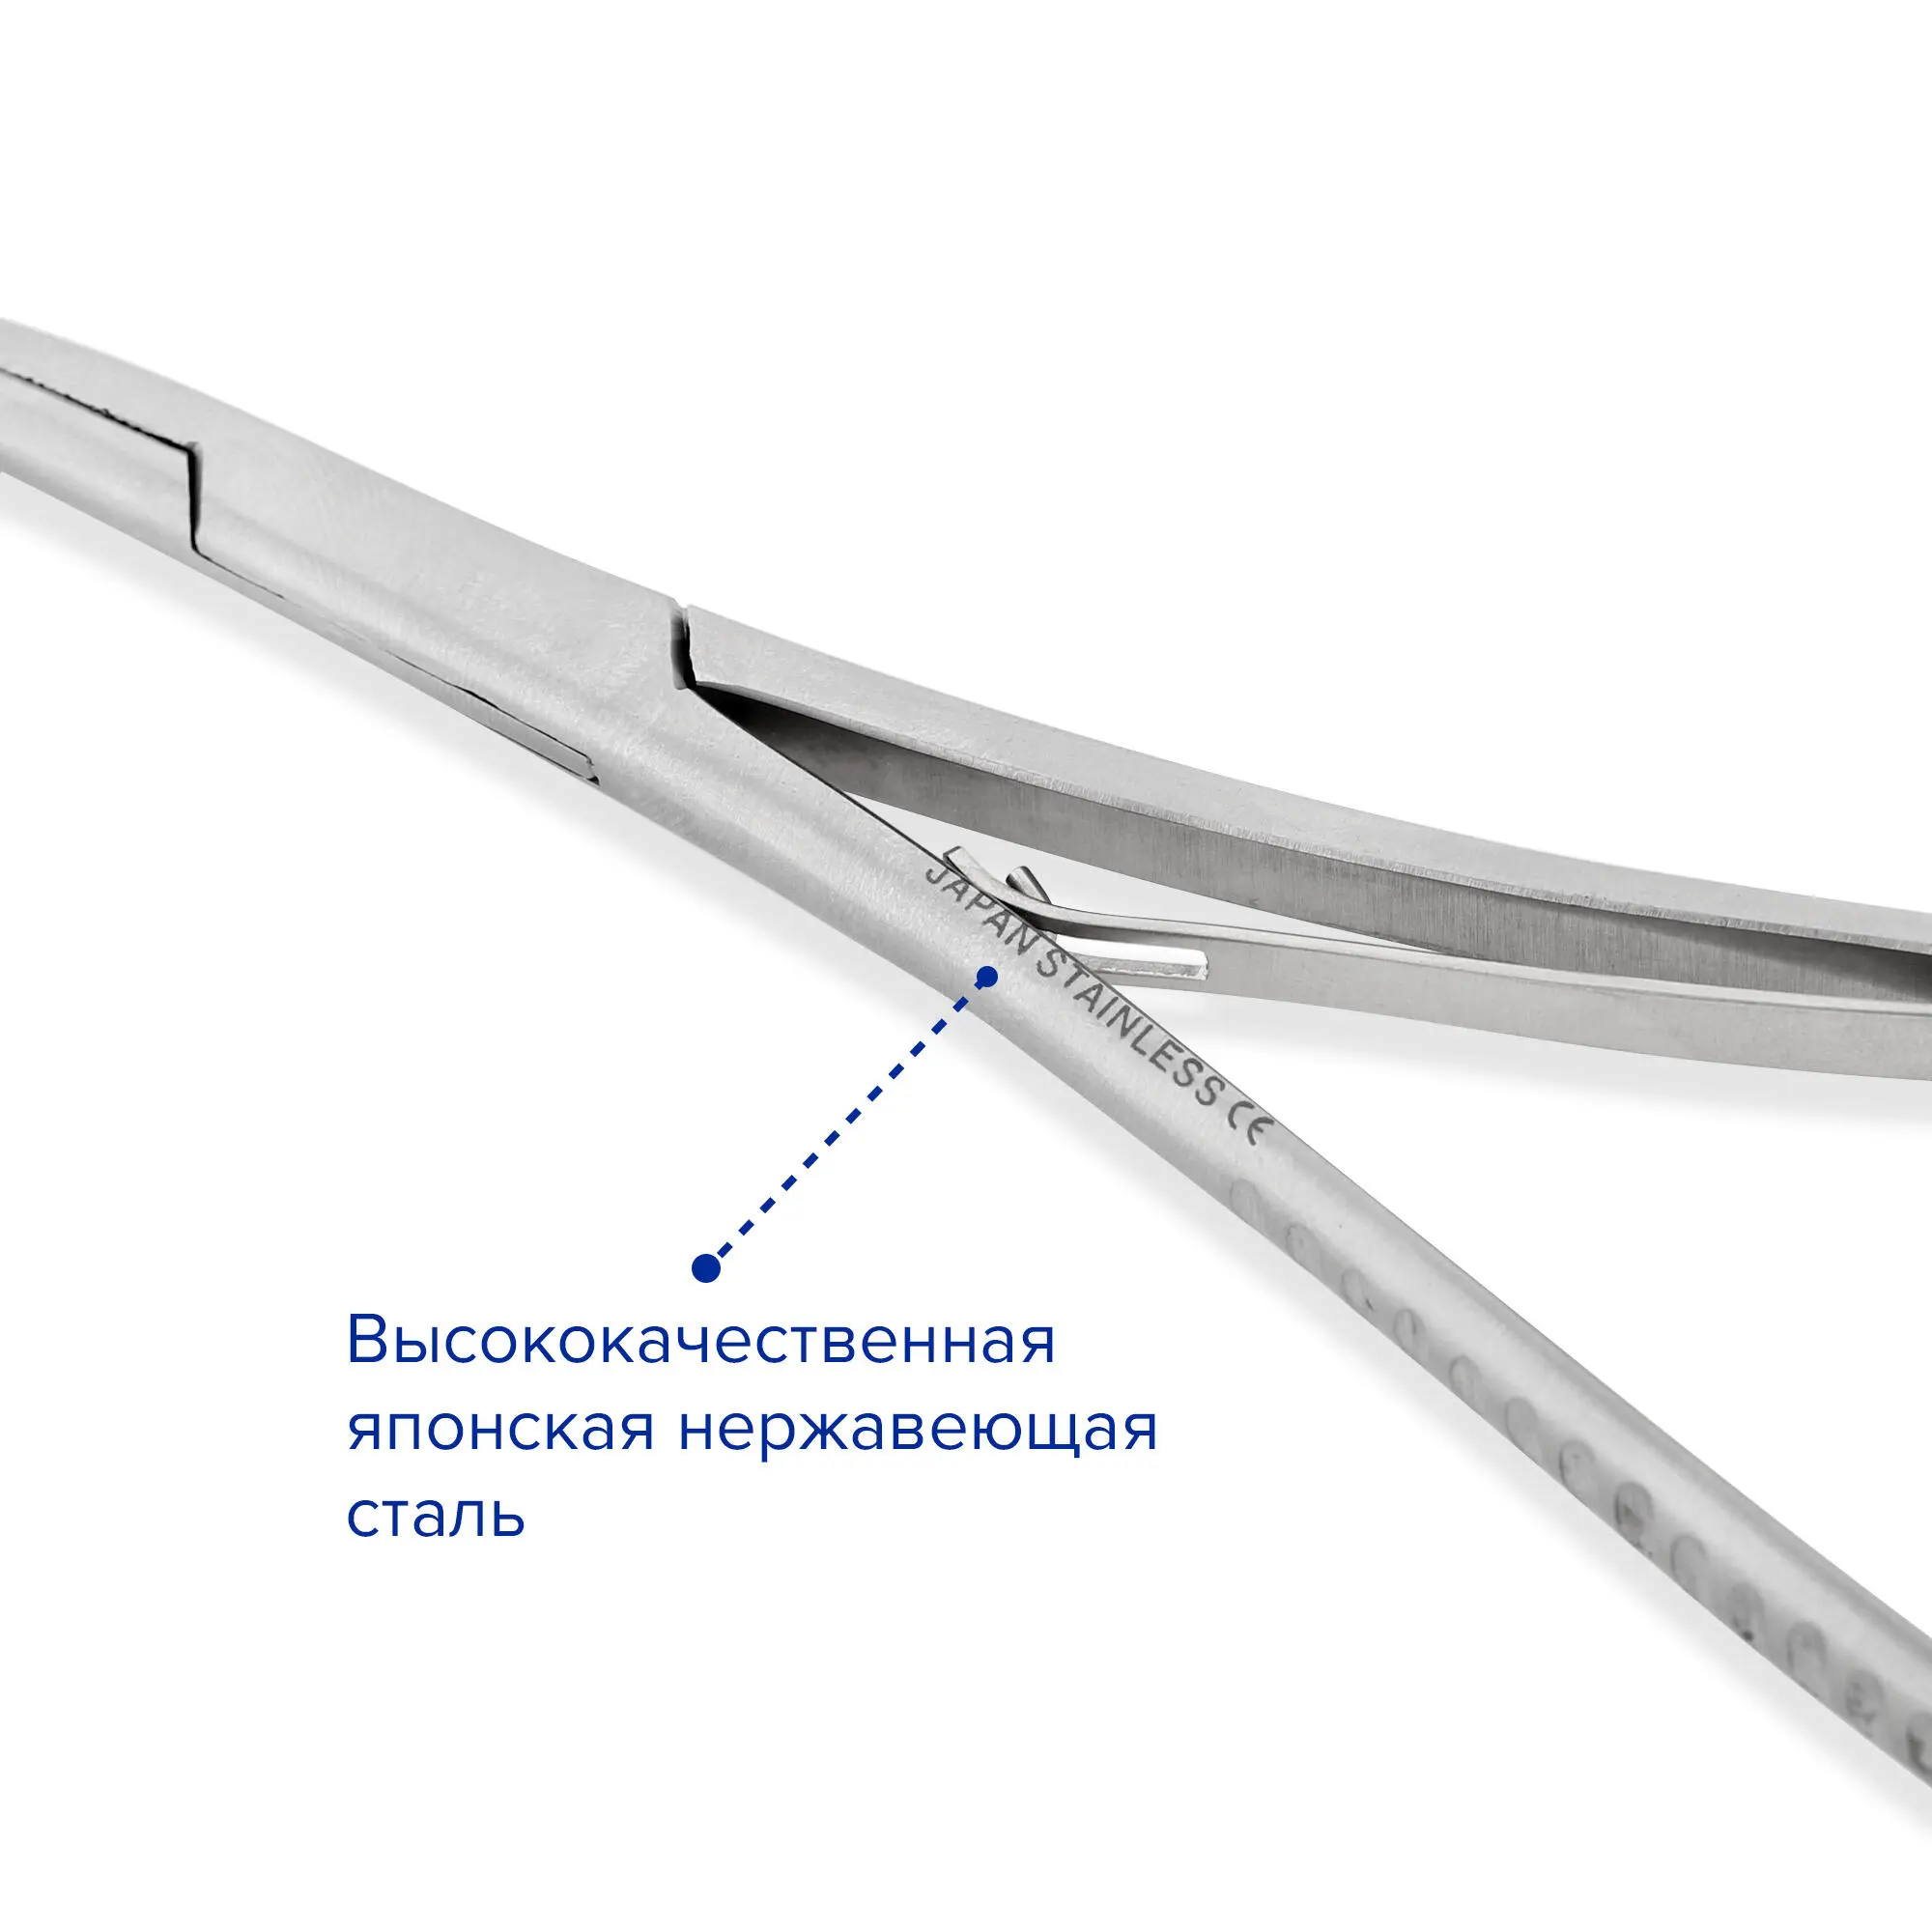 Иглодержатель хирургический с кремальерой и возвратной пружиной, прямой, тип Mathieu, 200 мм, Apexmed